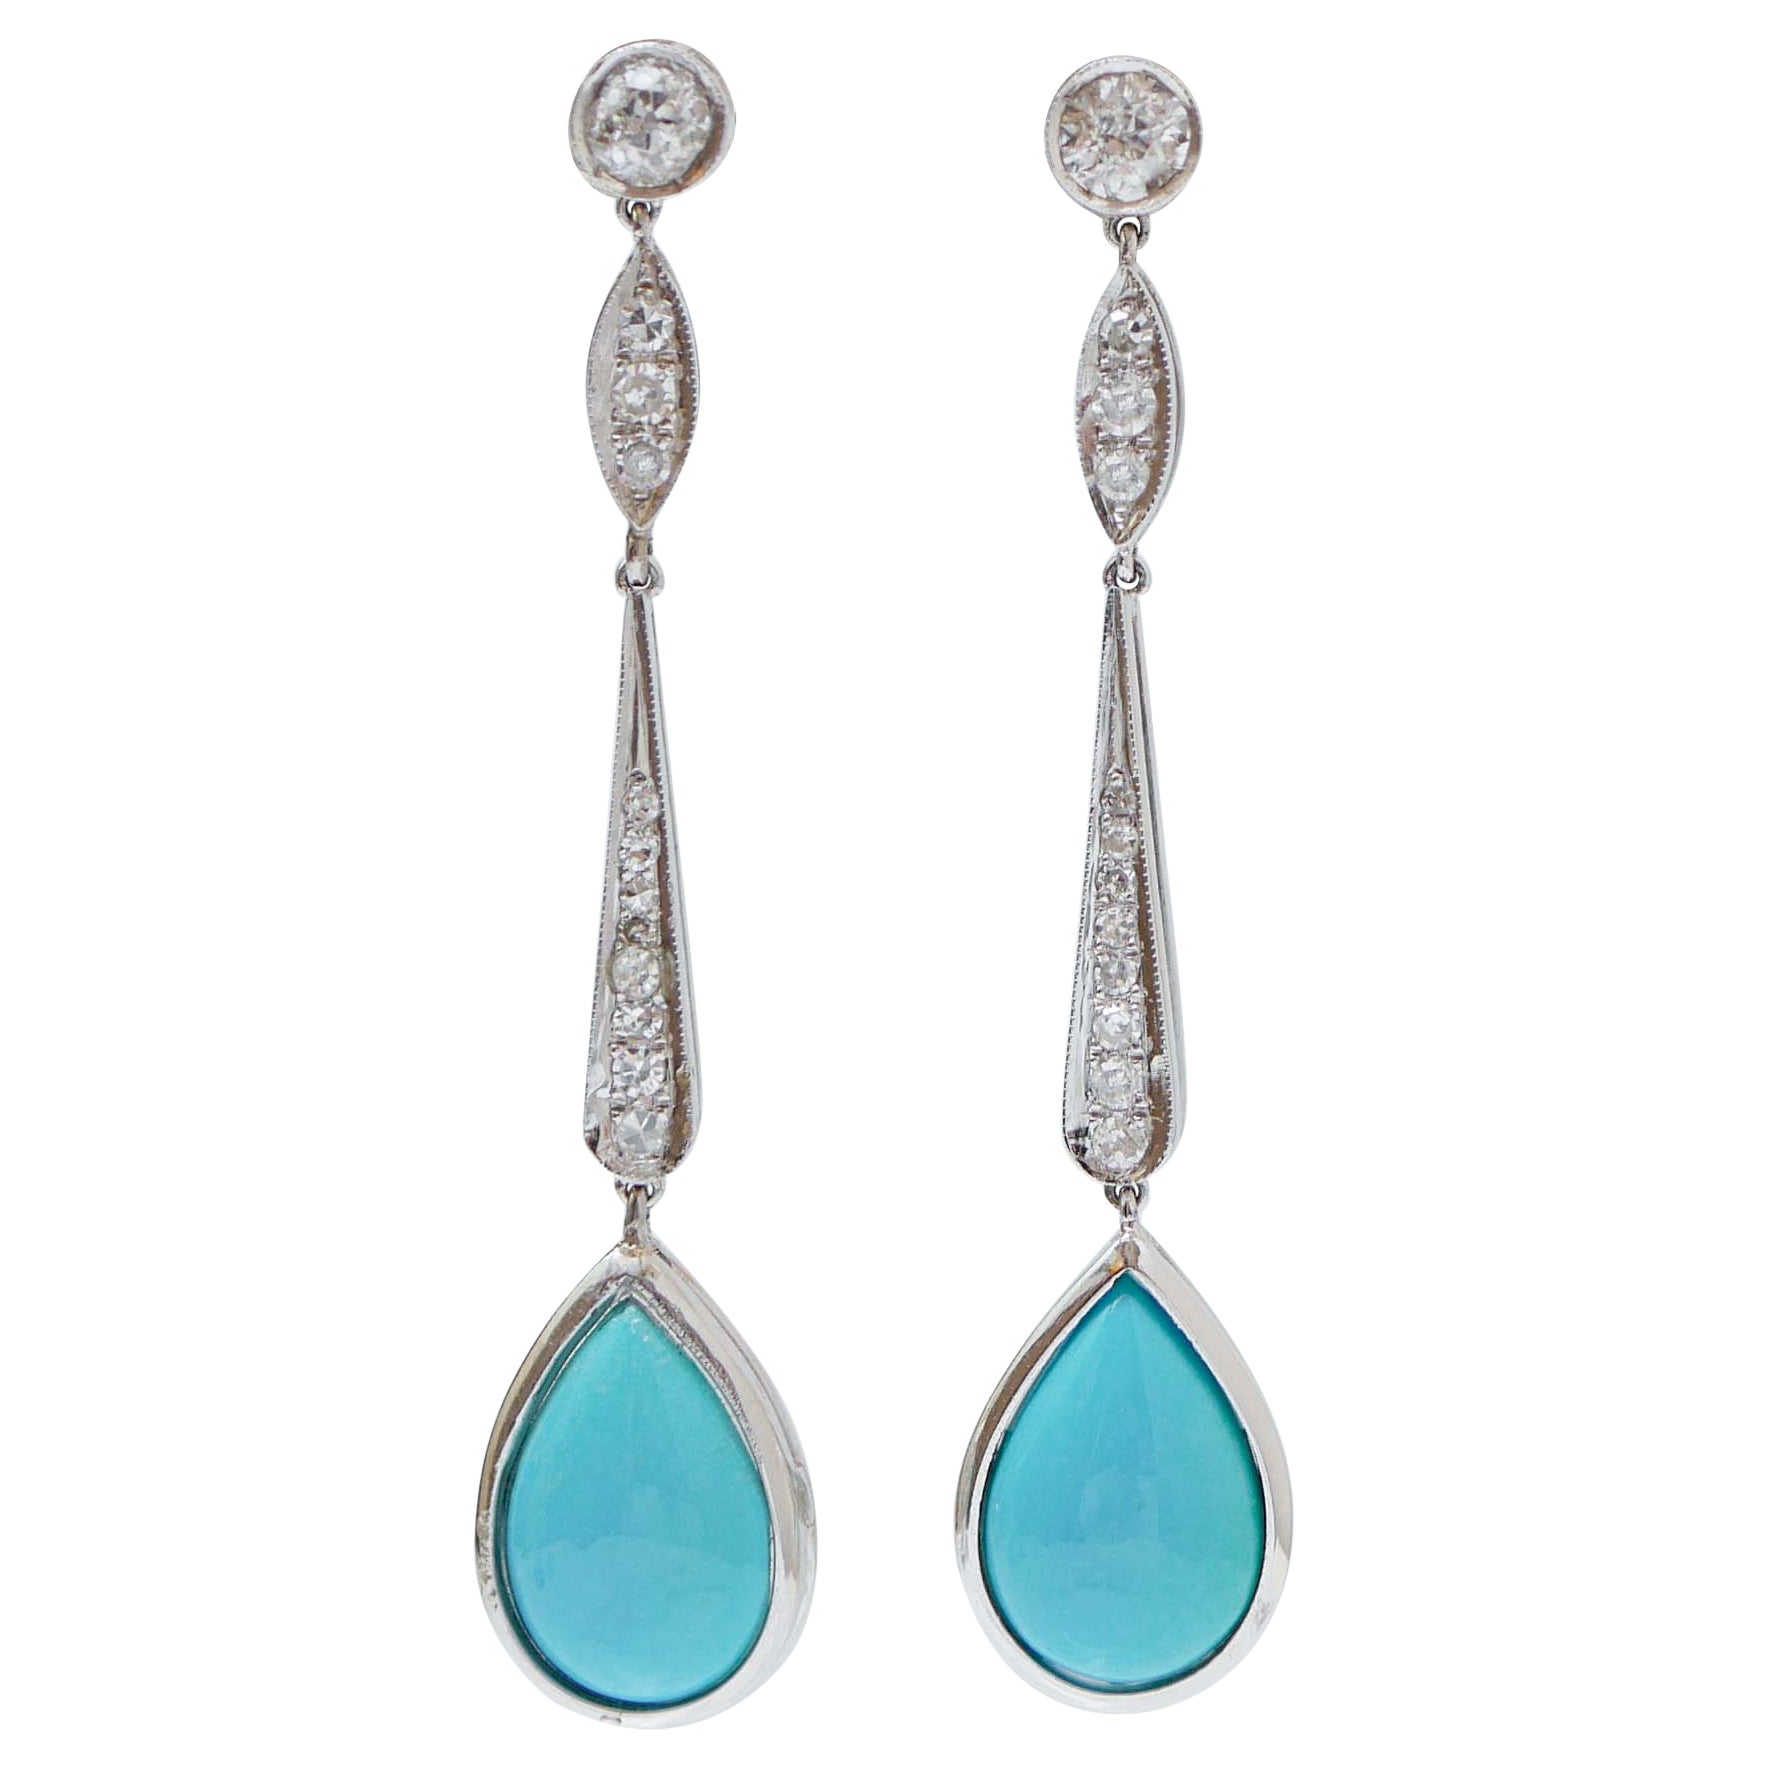 Turquoise, diamants, platine Boucles d'oreilles pendantes.